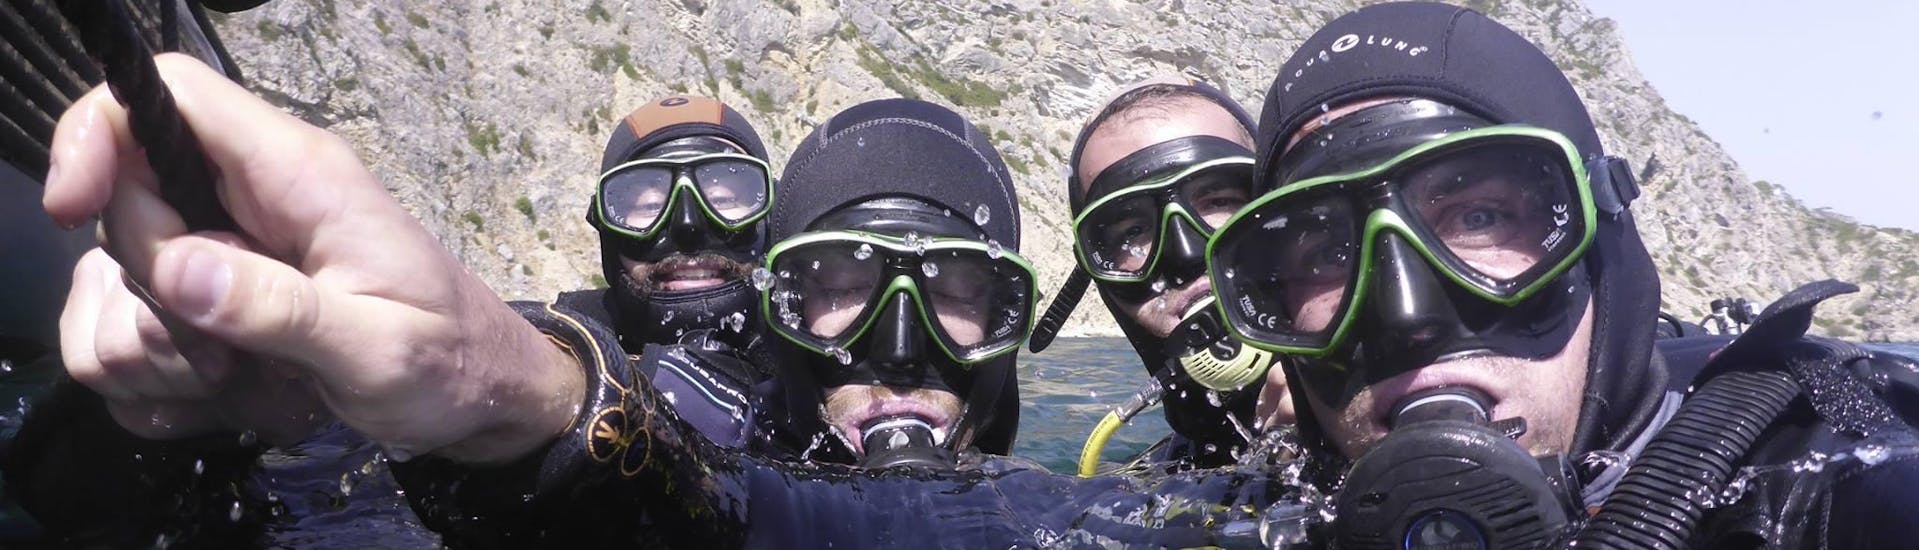 Vier Freunde im Wasser mit Tauchausrüstung bei einem geführten Bootstauchgang mit Haliotis Sesimbra.